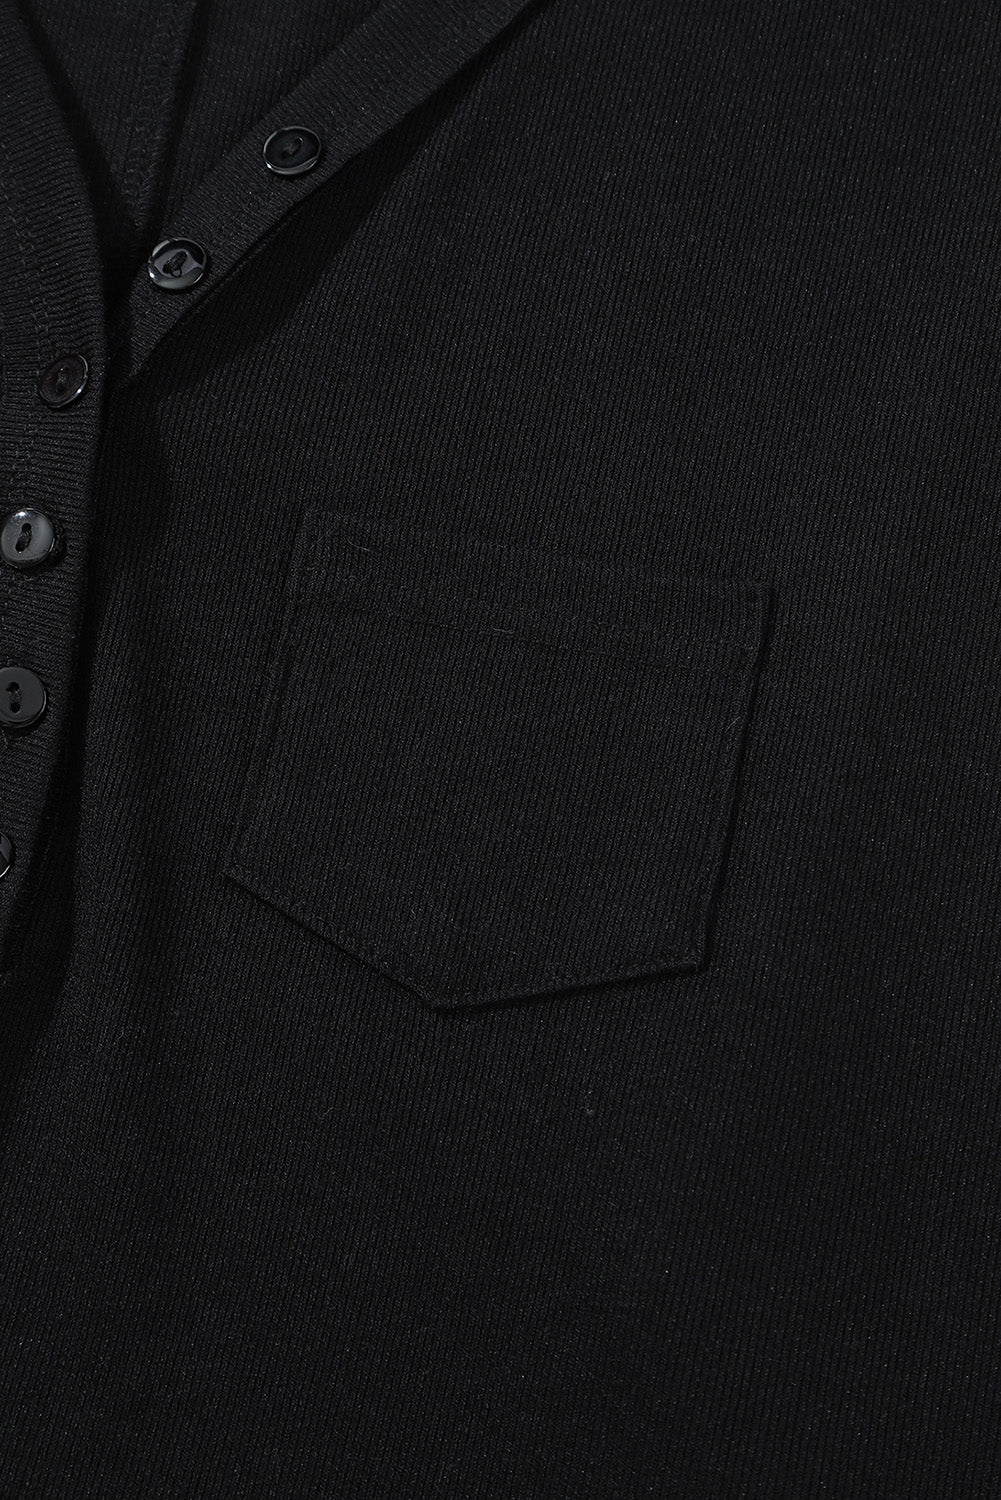 Črna rebrasta majica z žepom in gumbi z razcepljenim ovratnikom